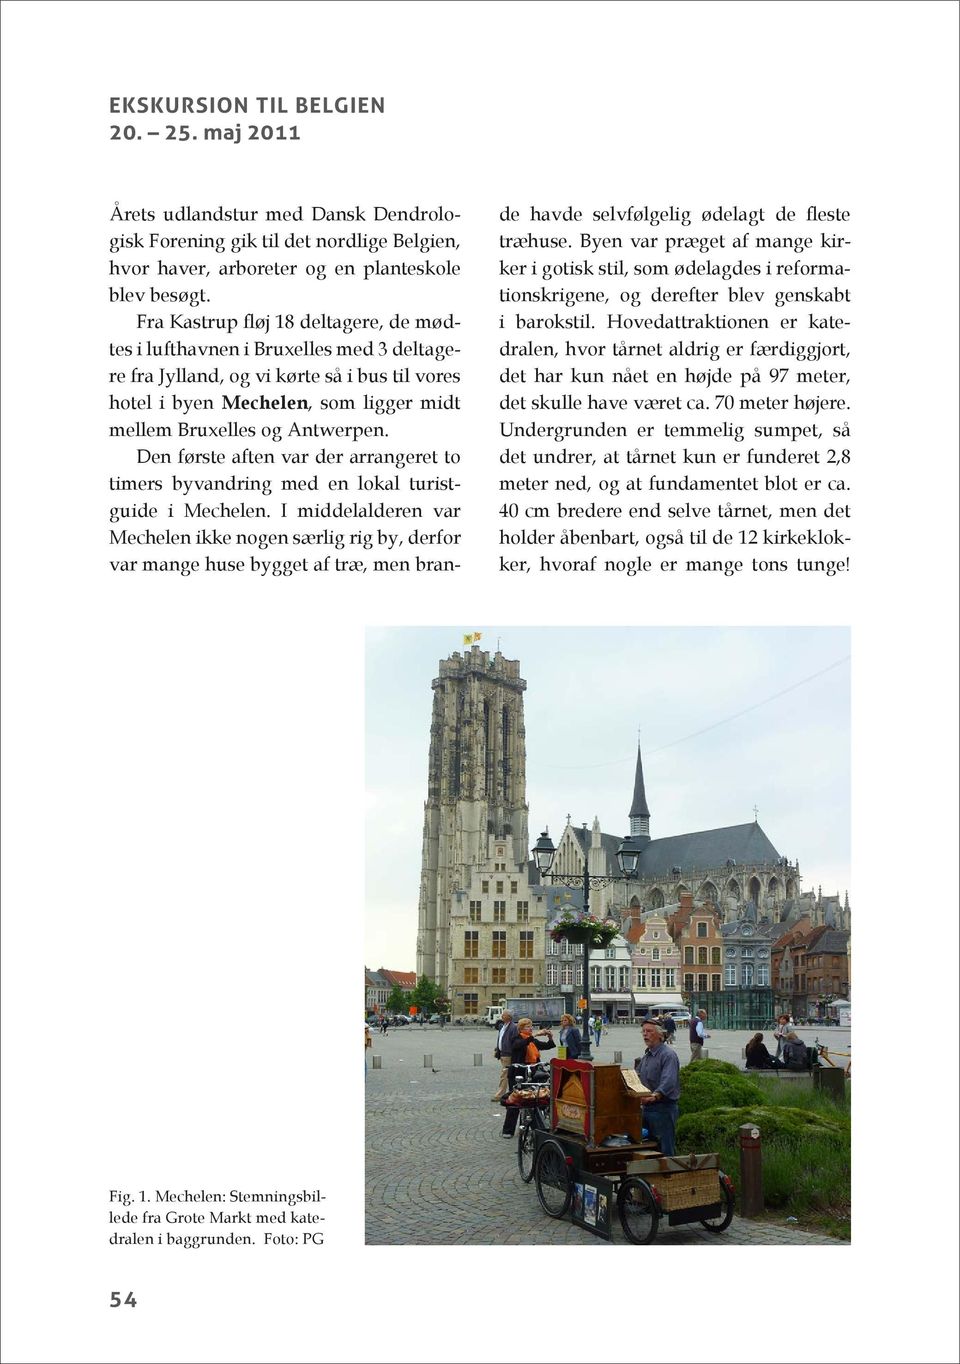 Den første aften var der arrangeret to timers byvandring med en lokal turistguide i Mechelen.